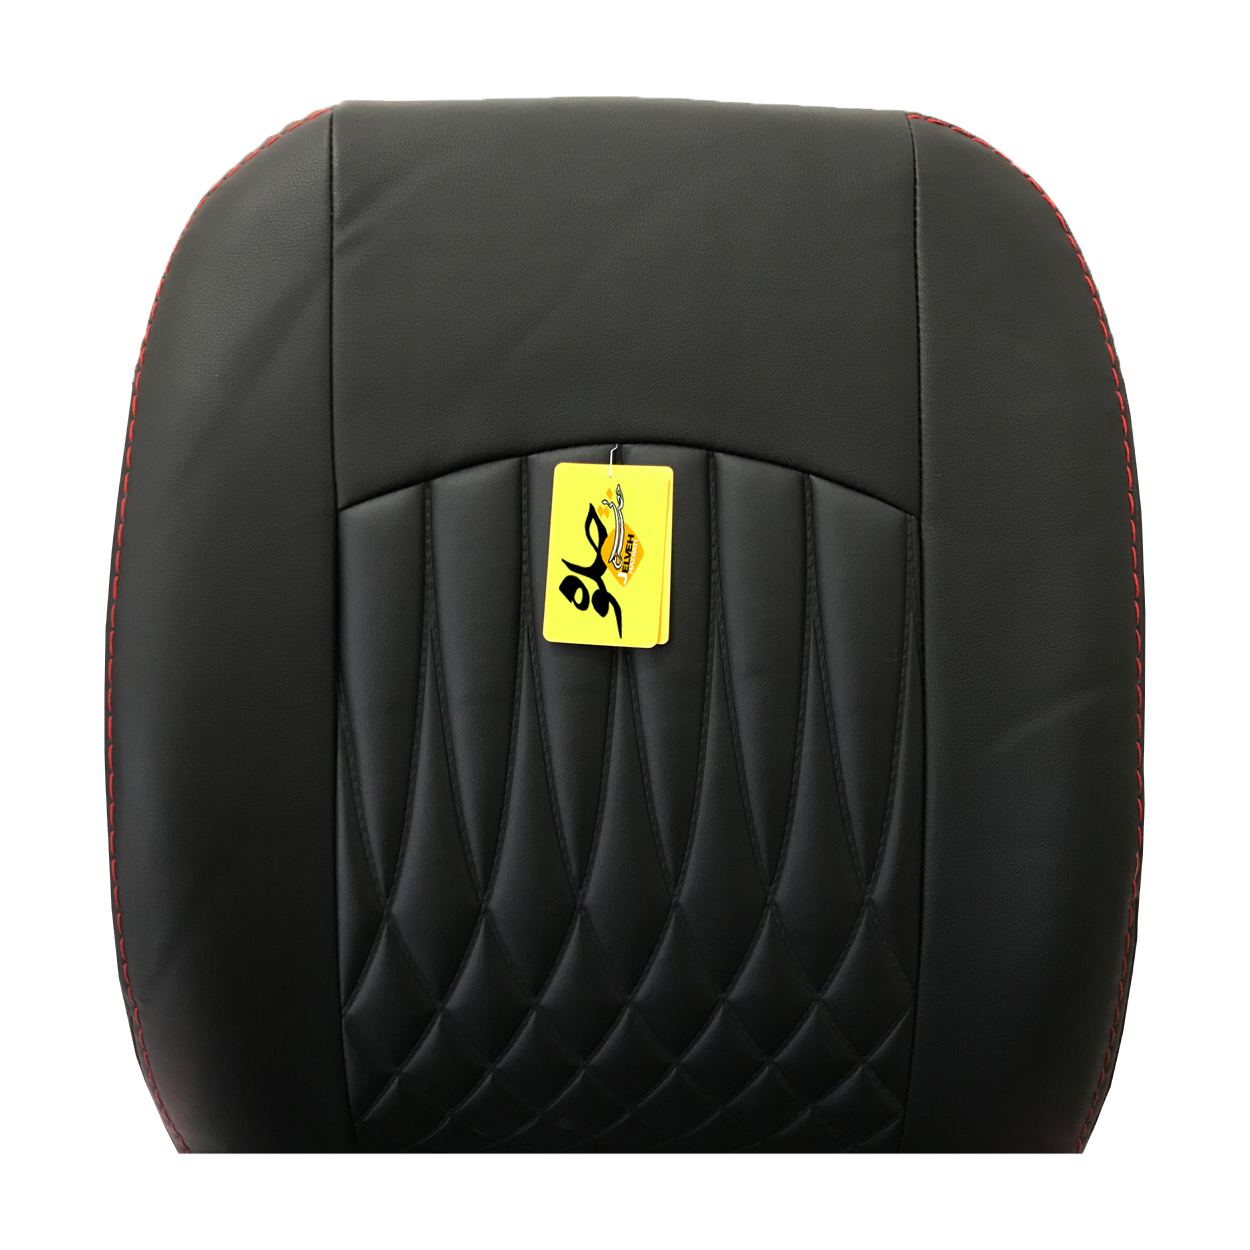 روکش صندلی خودرو جلوه مدل bg12 مناسب برای رانا